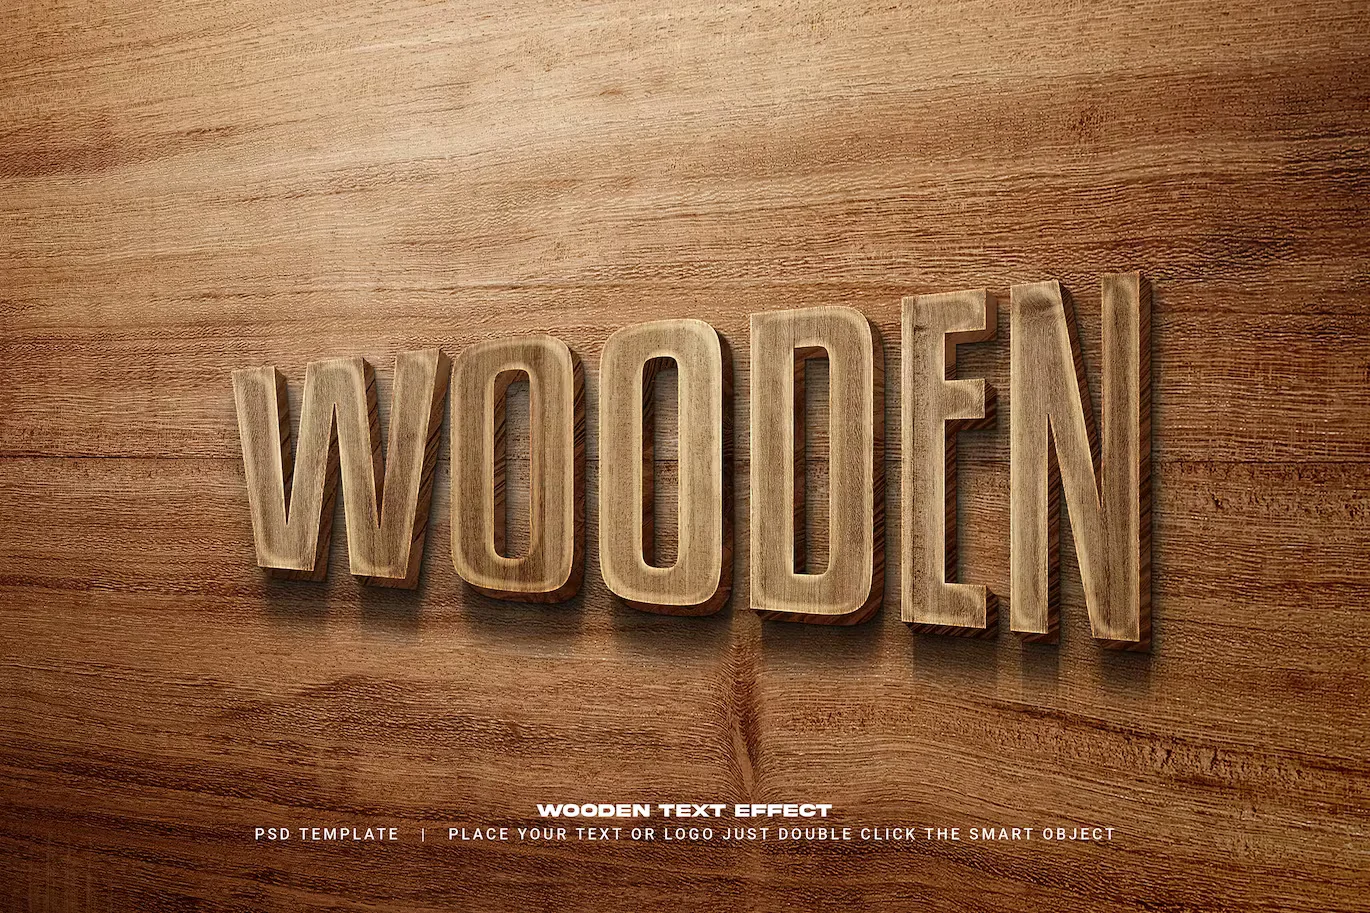 Wooden text effect